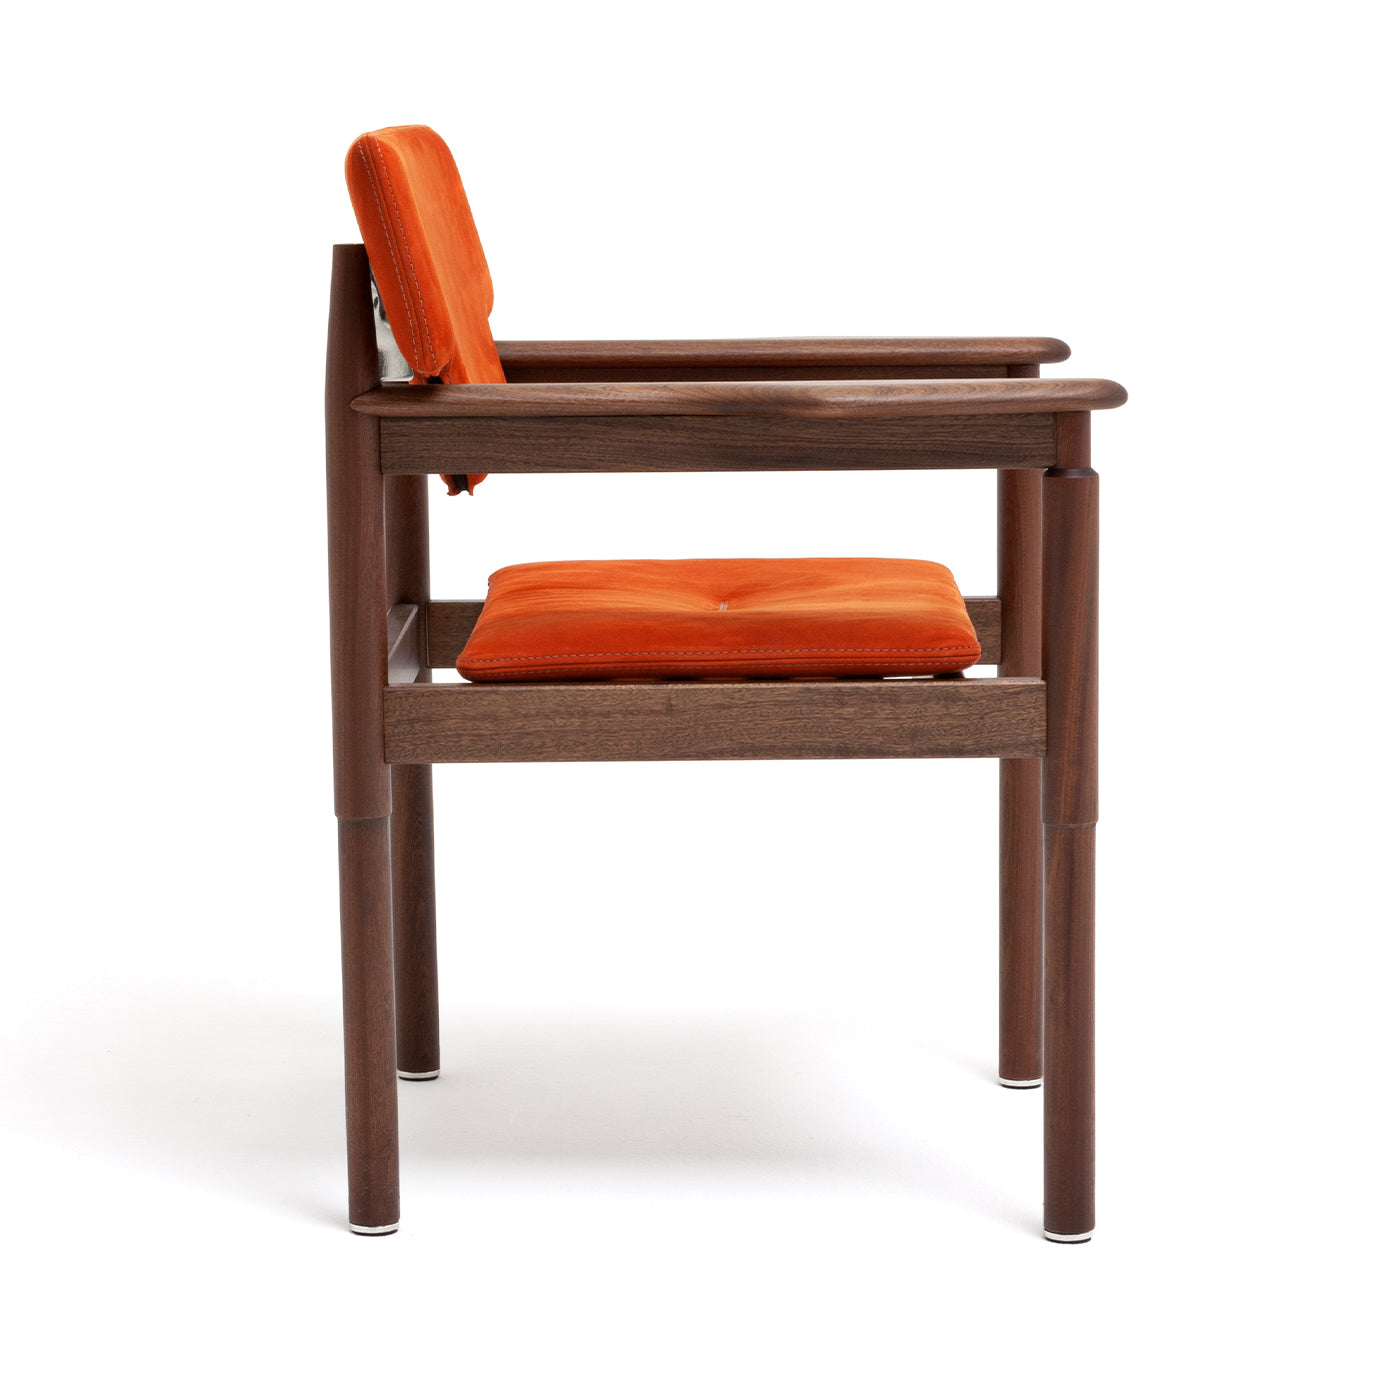 10th Vieste Chair by Massimo Castagna - Alternative view 1